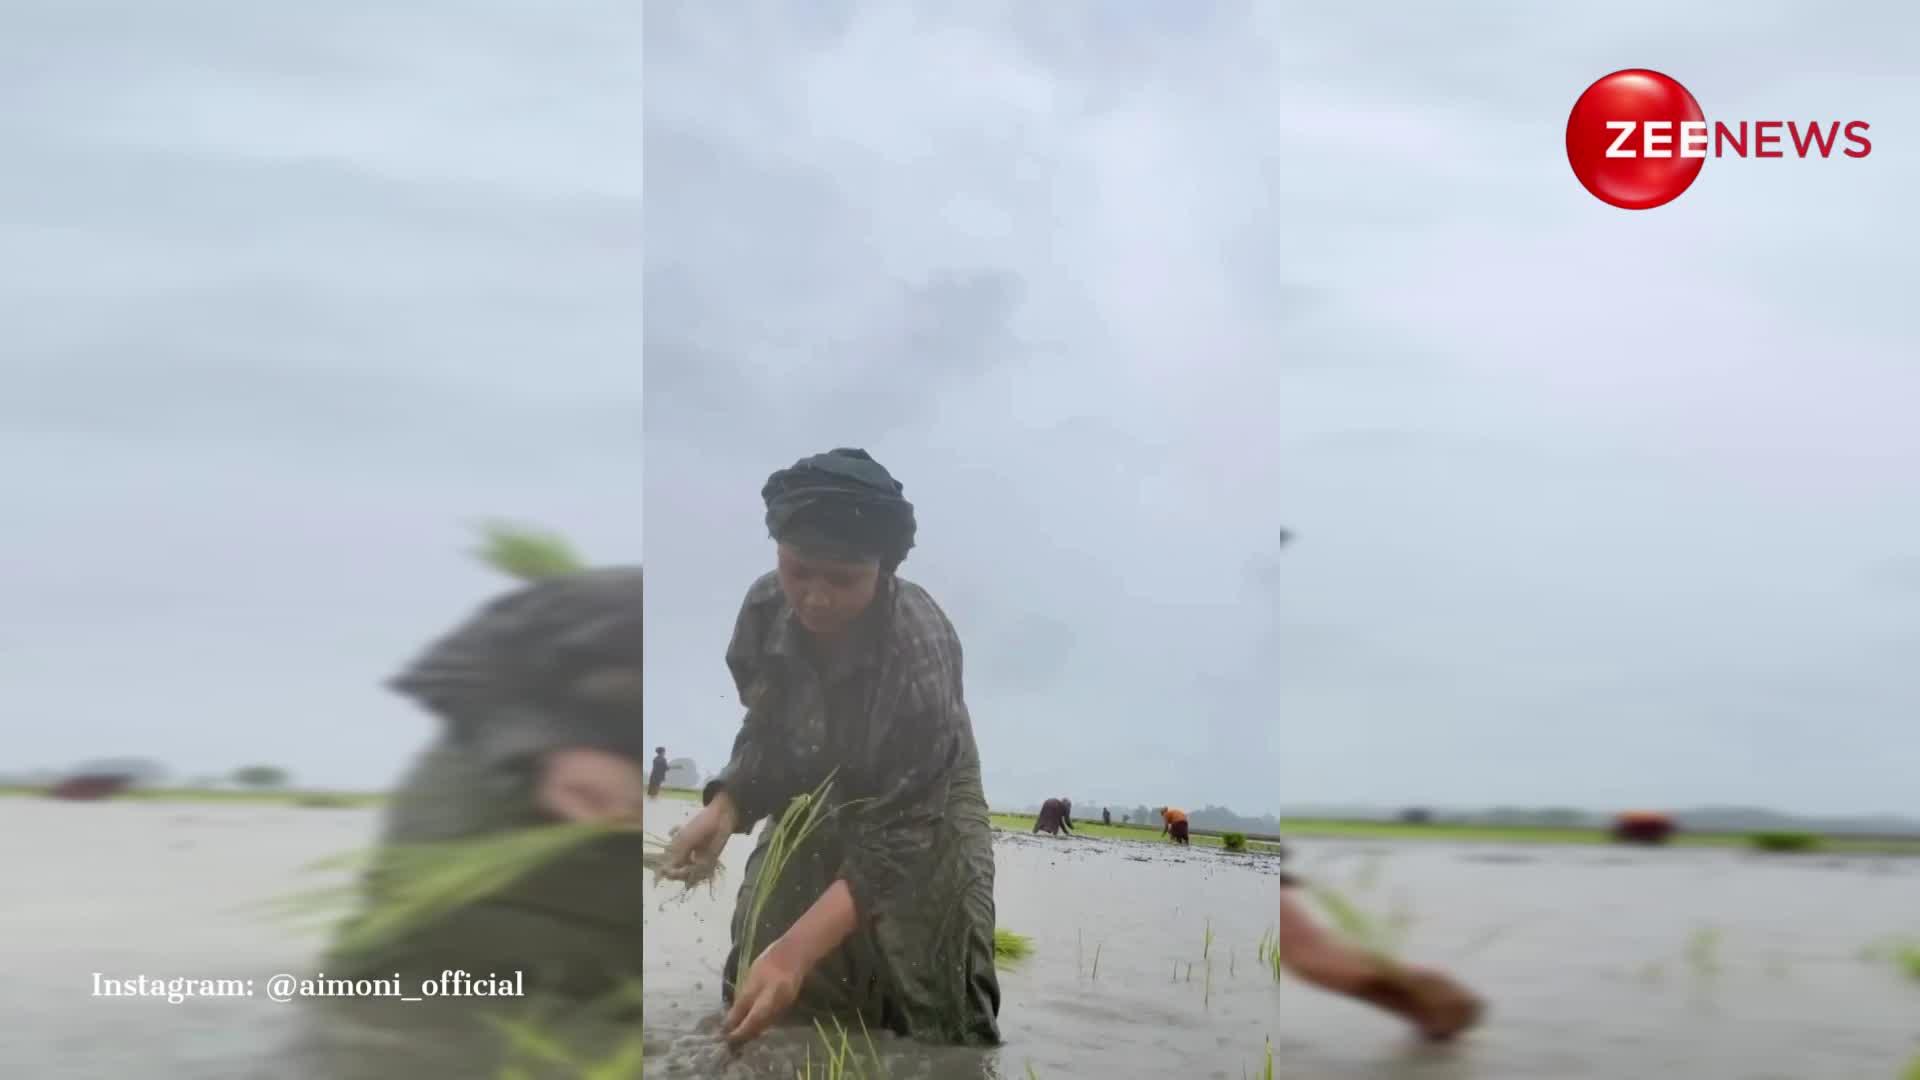 खेत में धान बोते हुए लड़की ने पुष्पा 2 के गाने 'अंगारों' पर किया जोरदार डांस, टैलेंट देख वाह-वाह लिखते रह गए यूजर्स